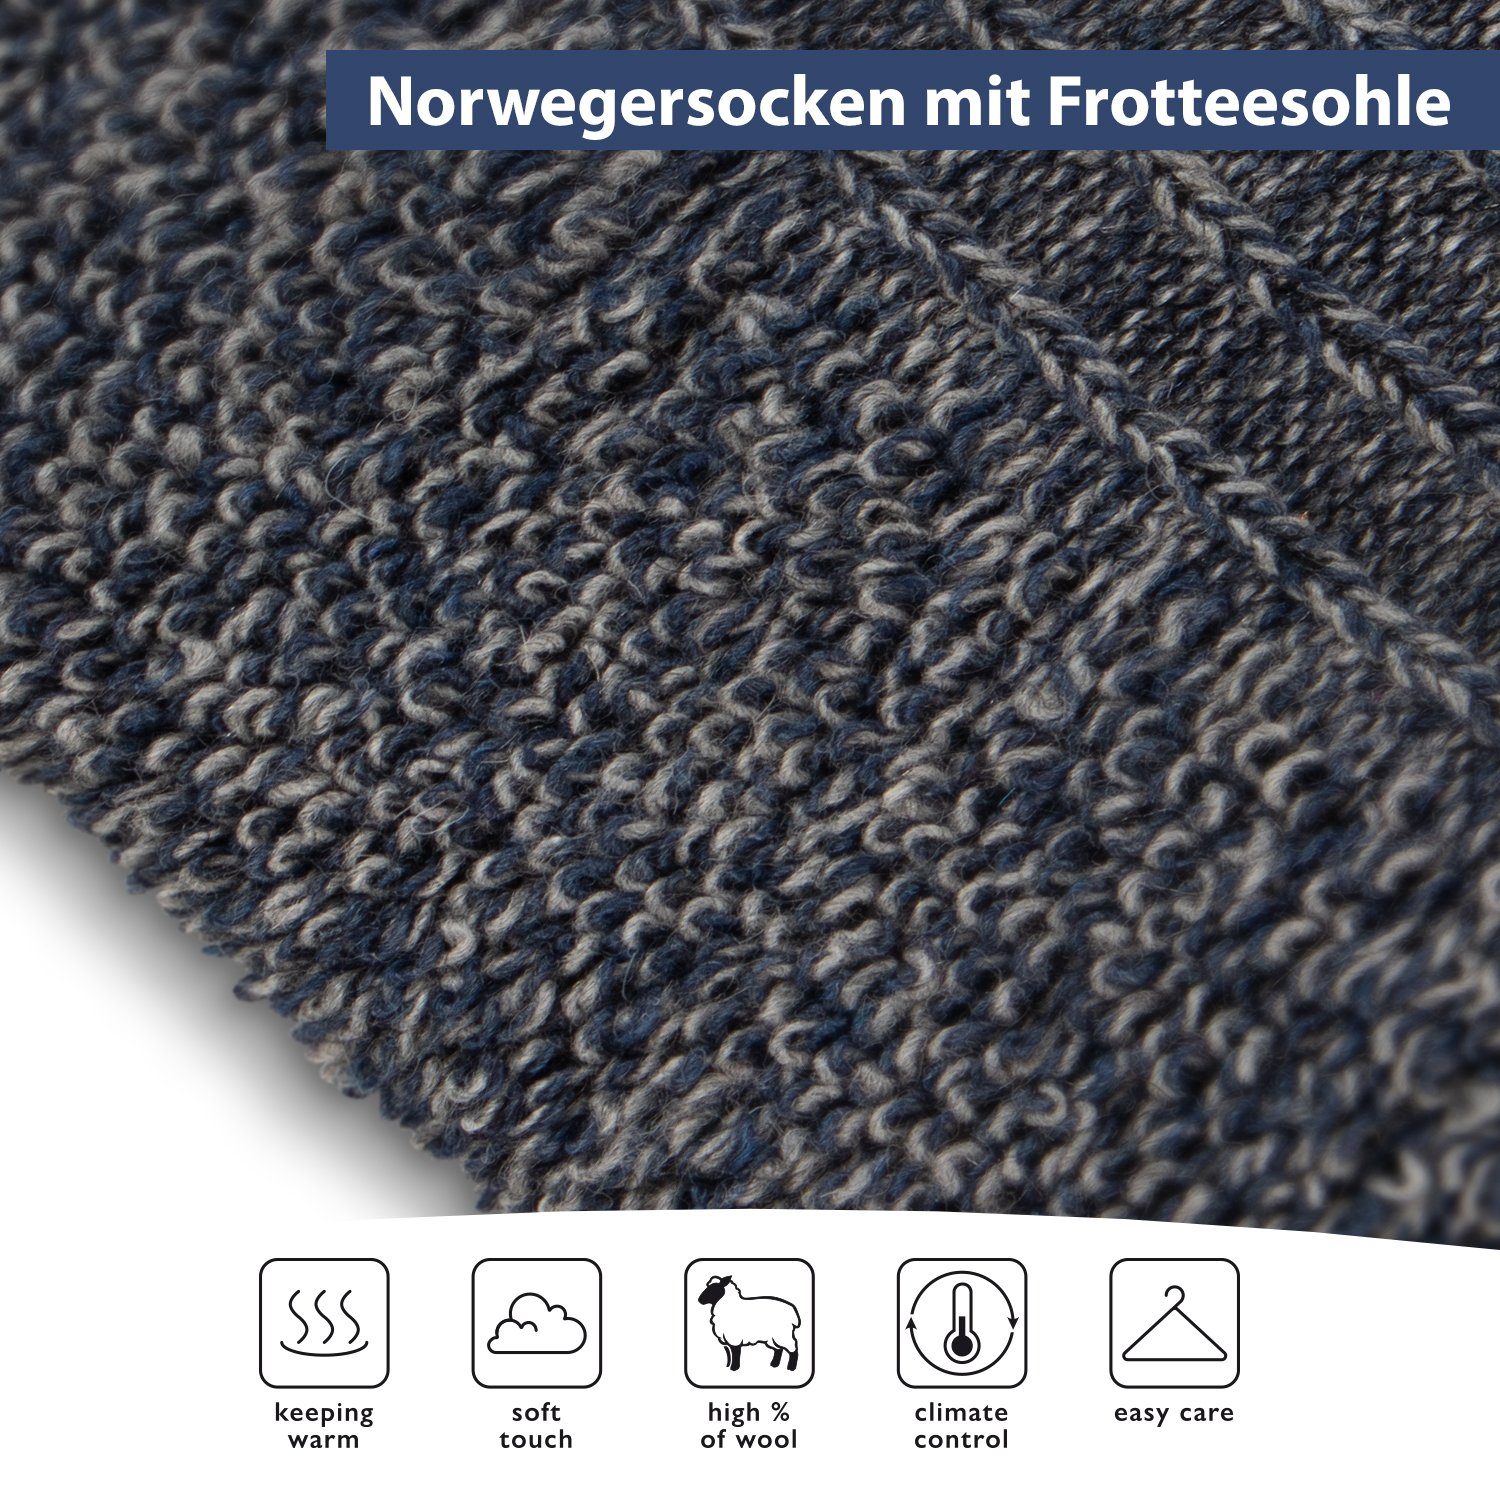 Plüschsohle Frottee Braun (6 Winter Paar) Norweger Norwegersocken Socken Herren Footstar